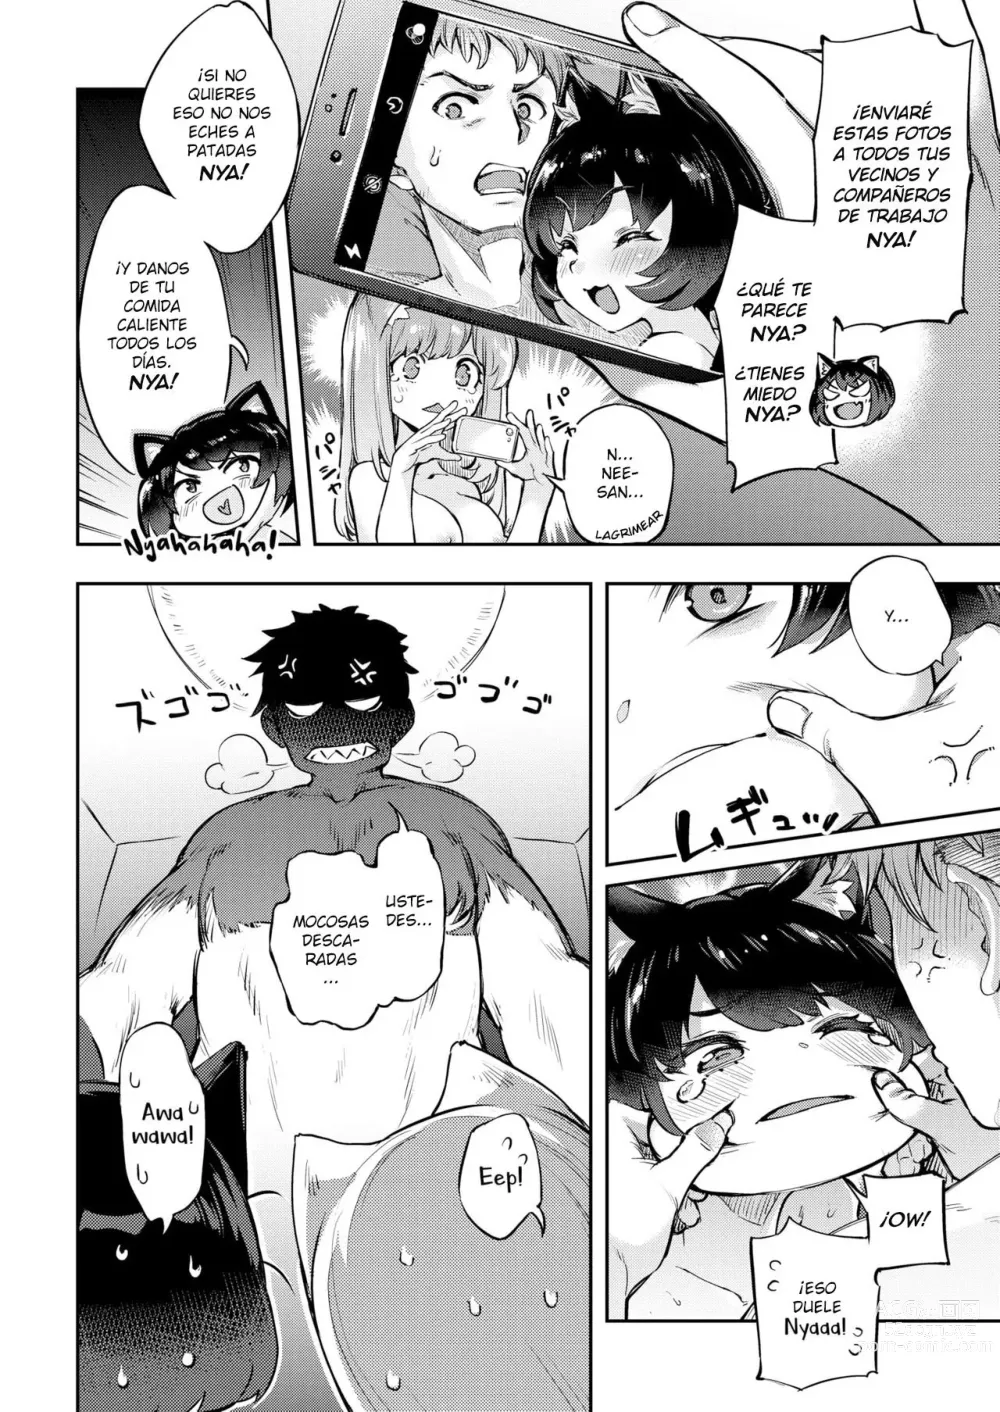 Page 8 of manga Gatitas no invitadas 3